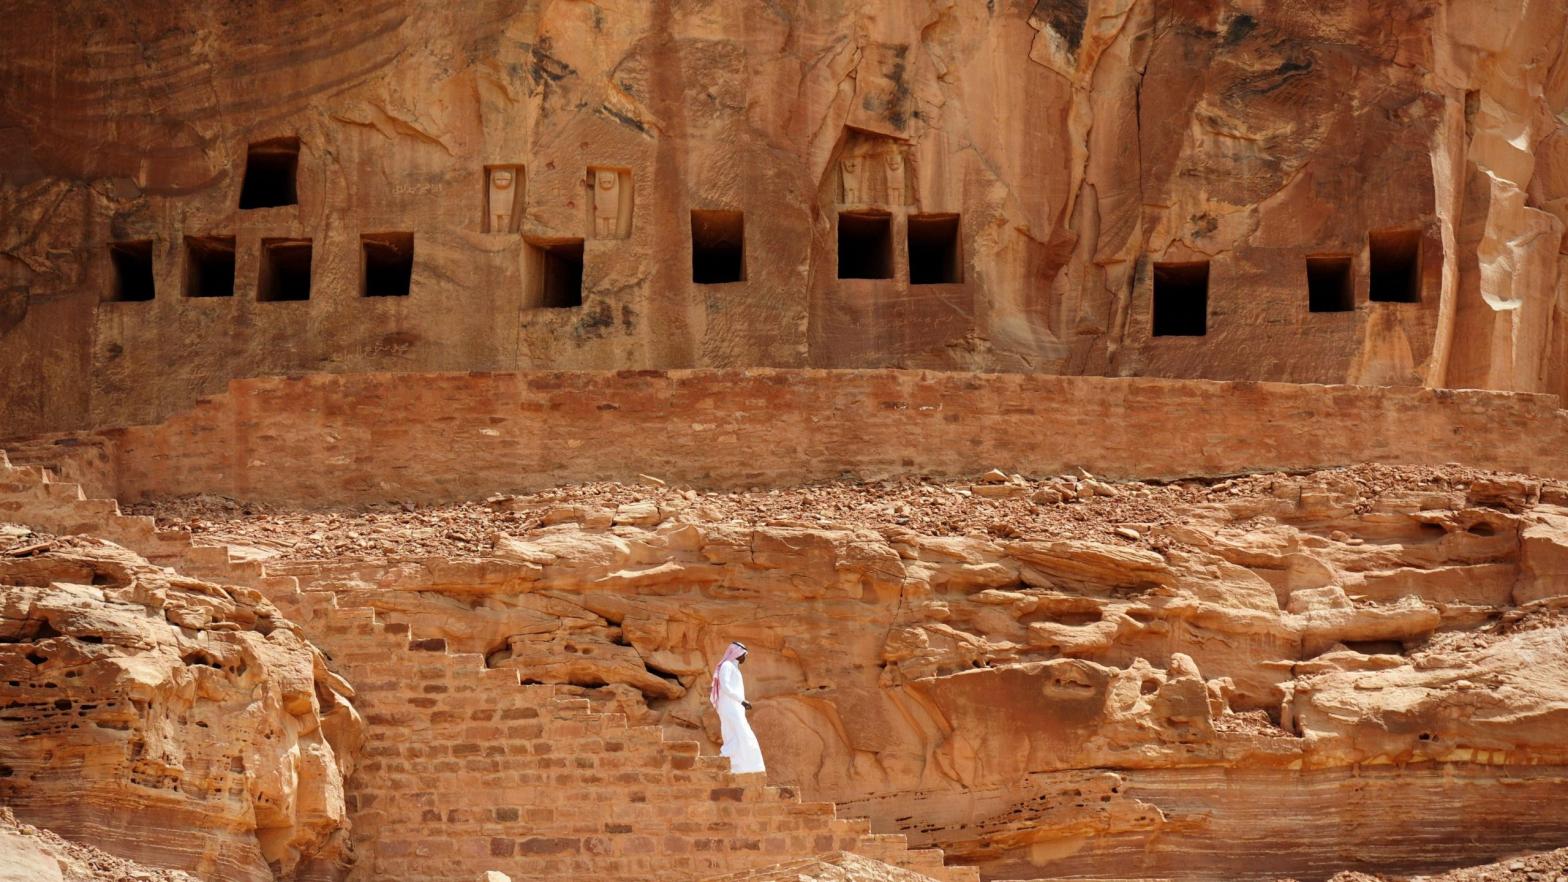 The 2,600-year-old rock-cut tombs of Al-Khuraiba, in Saudi Arabia. (Image: FAYEZ NURELDINE/AFP, Getty Images)